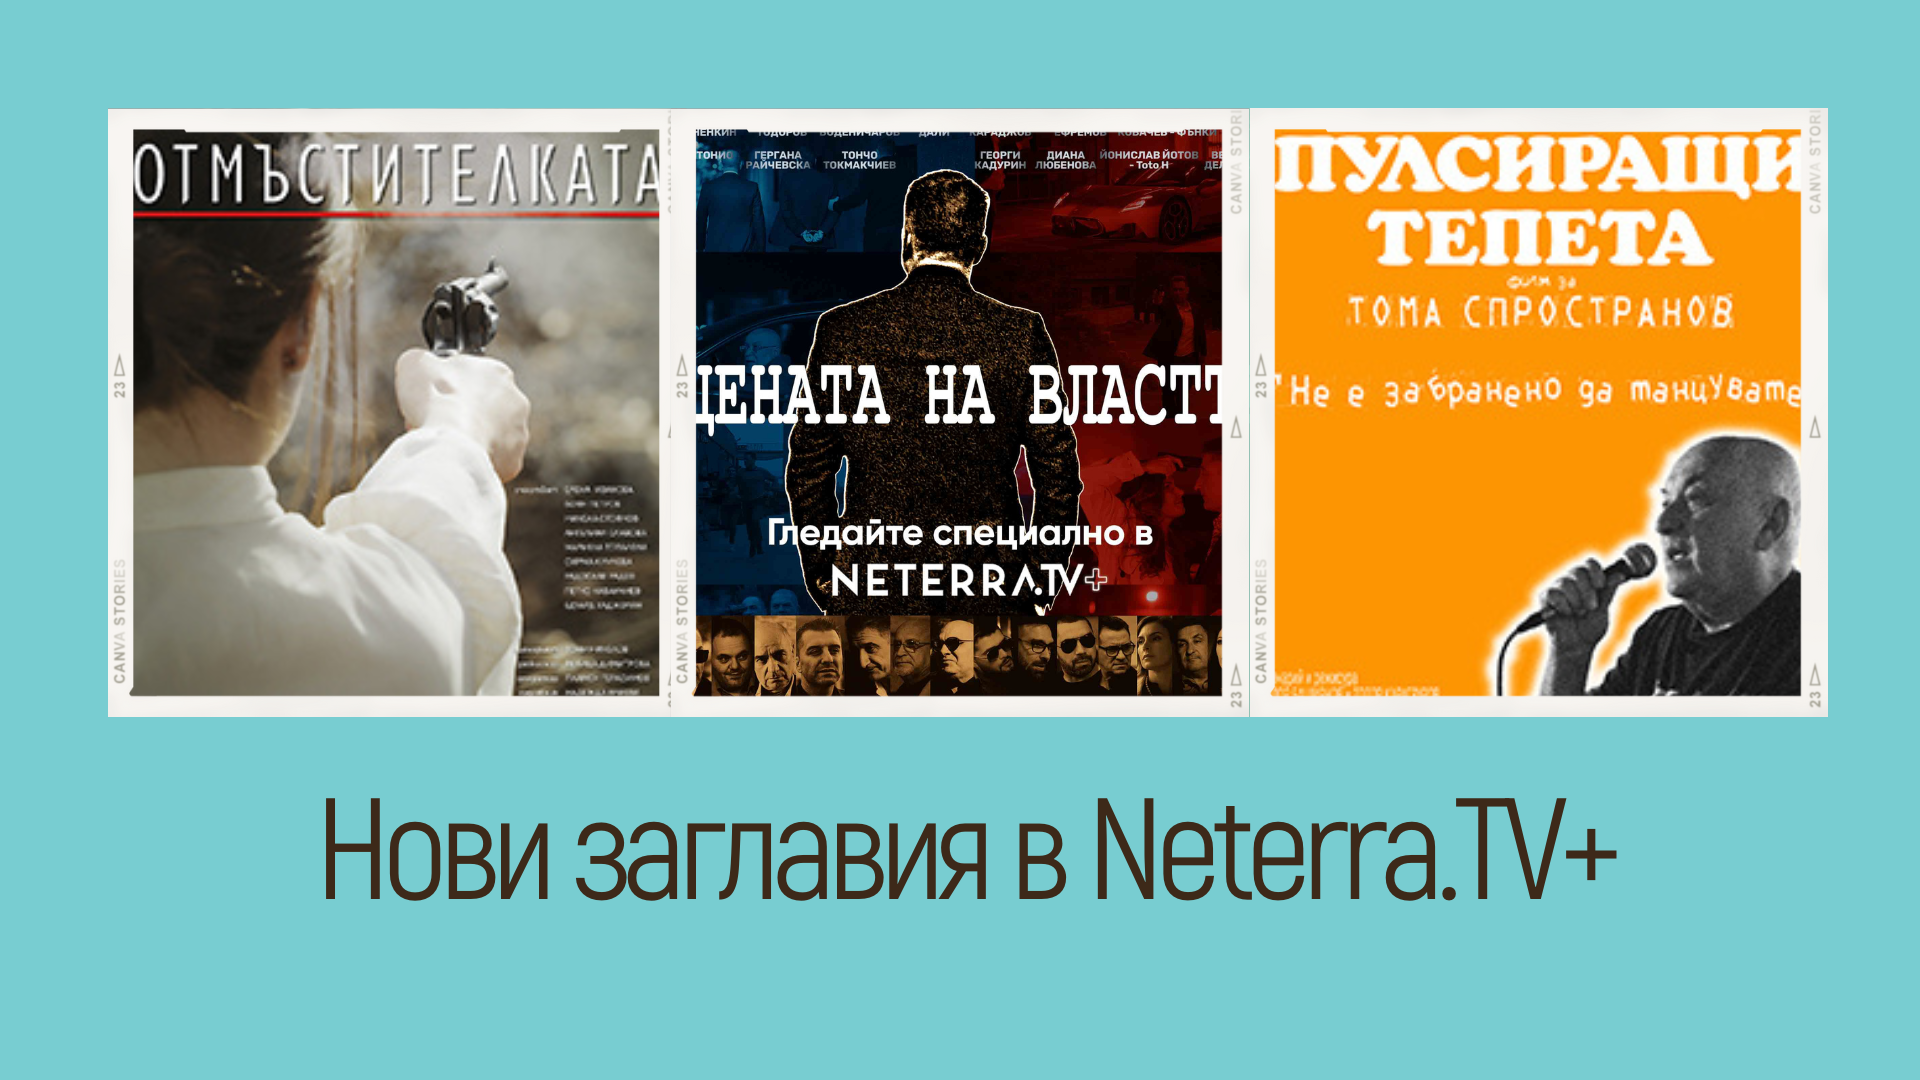 Онлайн премиери на 3 нови български филма в Neterra.TV+